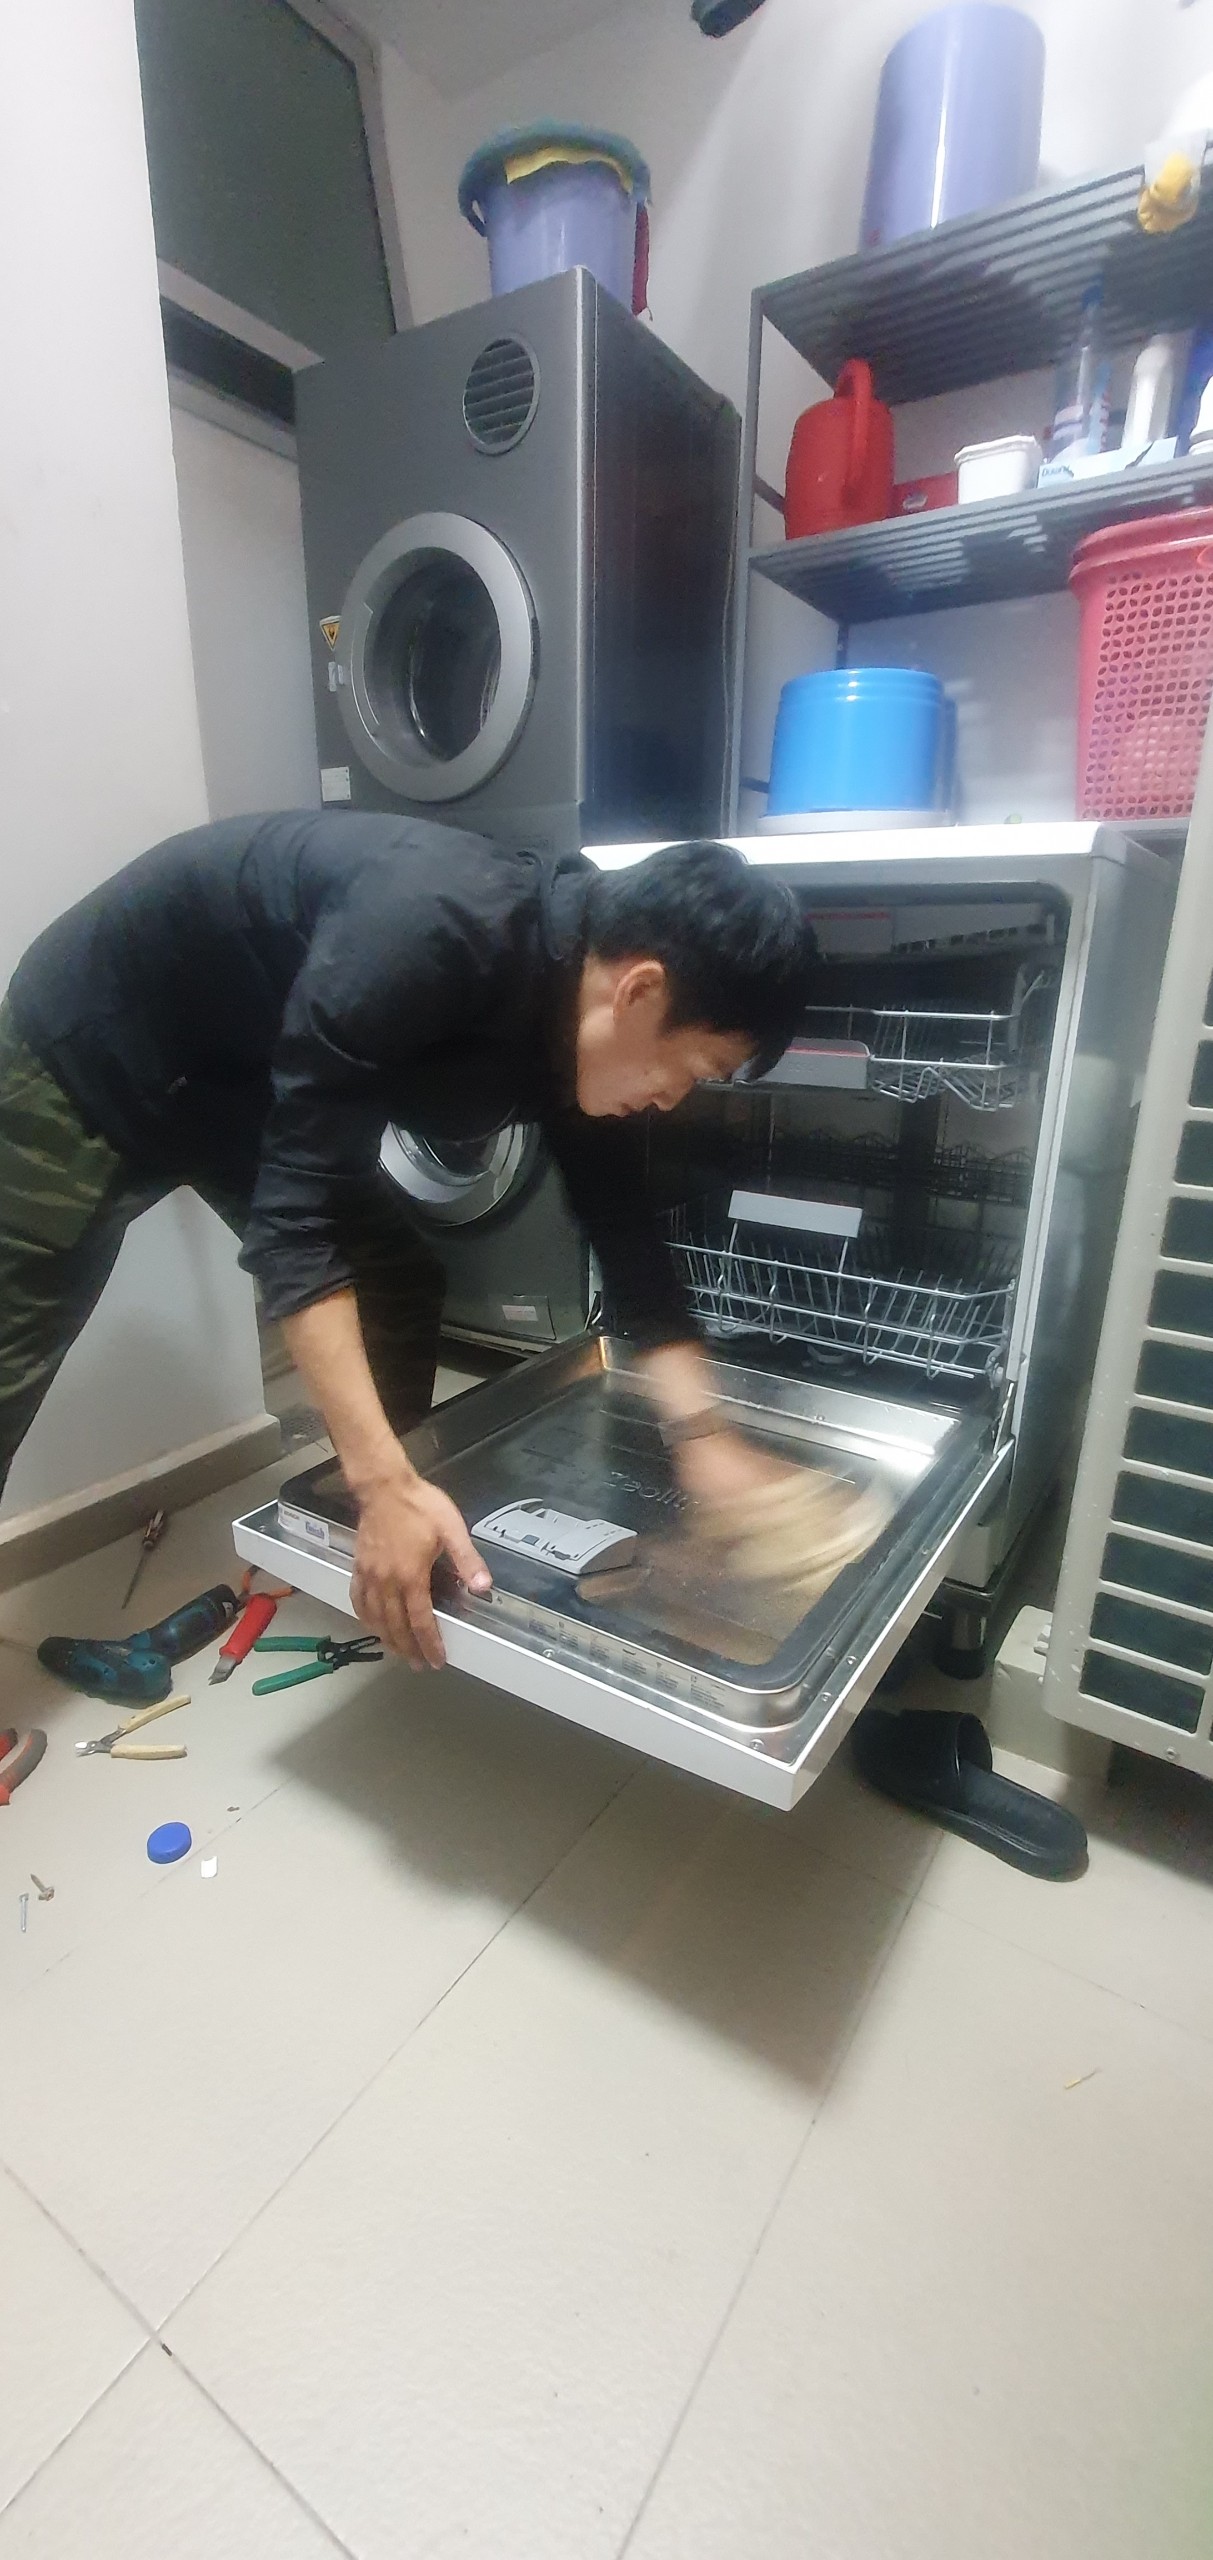 z4449111395020 a8f18f99116fd58c1bfe274cf9033373 - Sửa máy rửa bát bị mất nước nóng tại nhà ở Sài Gòn